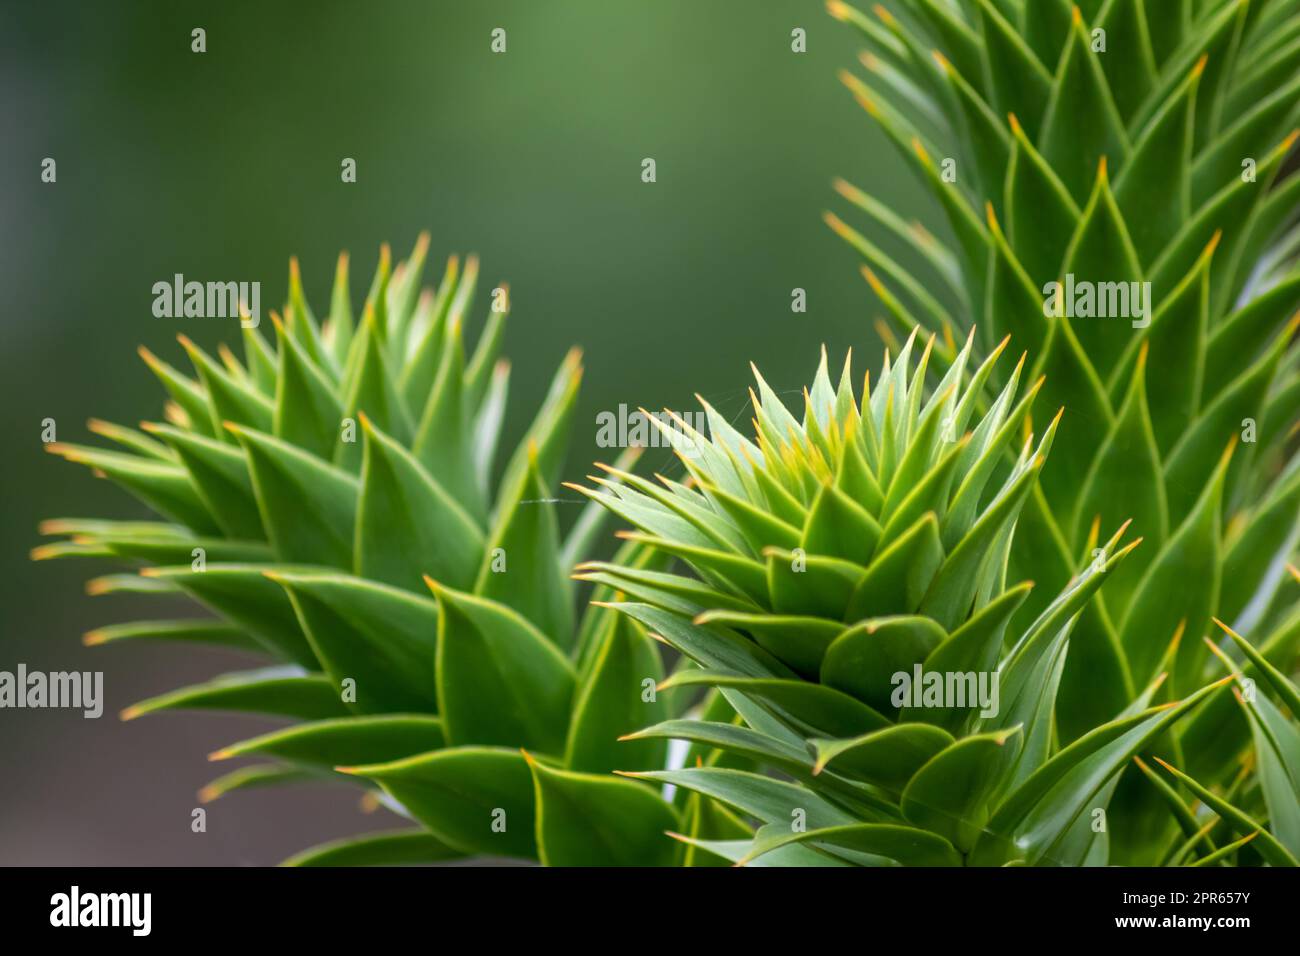 Foglie verdi spinose di araucaria araucana o albero della coda di scimmia con foglie affilate simili ad aghi e punte di piante esotiche nella natura selvaggia della patagonia mostrano dettagli di forma simmetrica delle foglie verdi Foto Stock